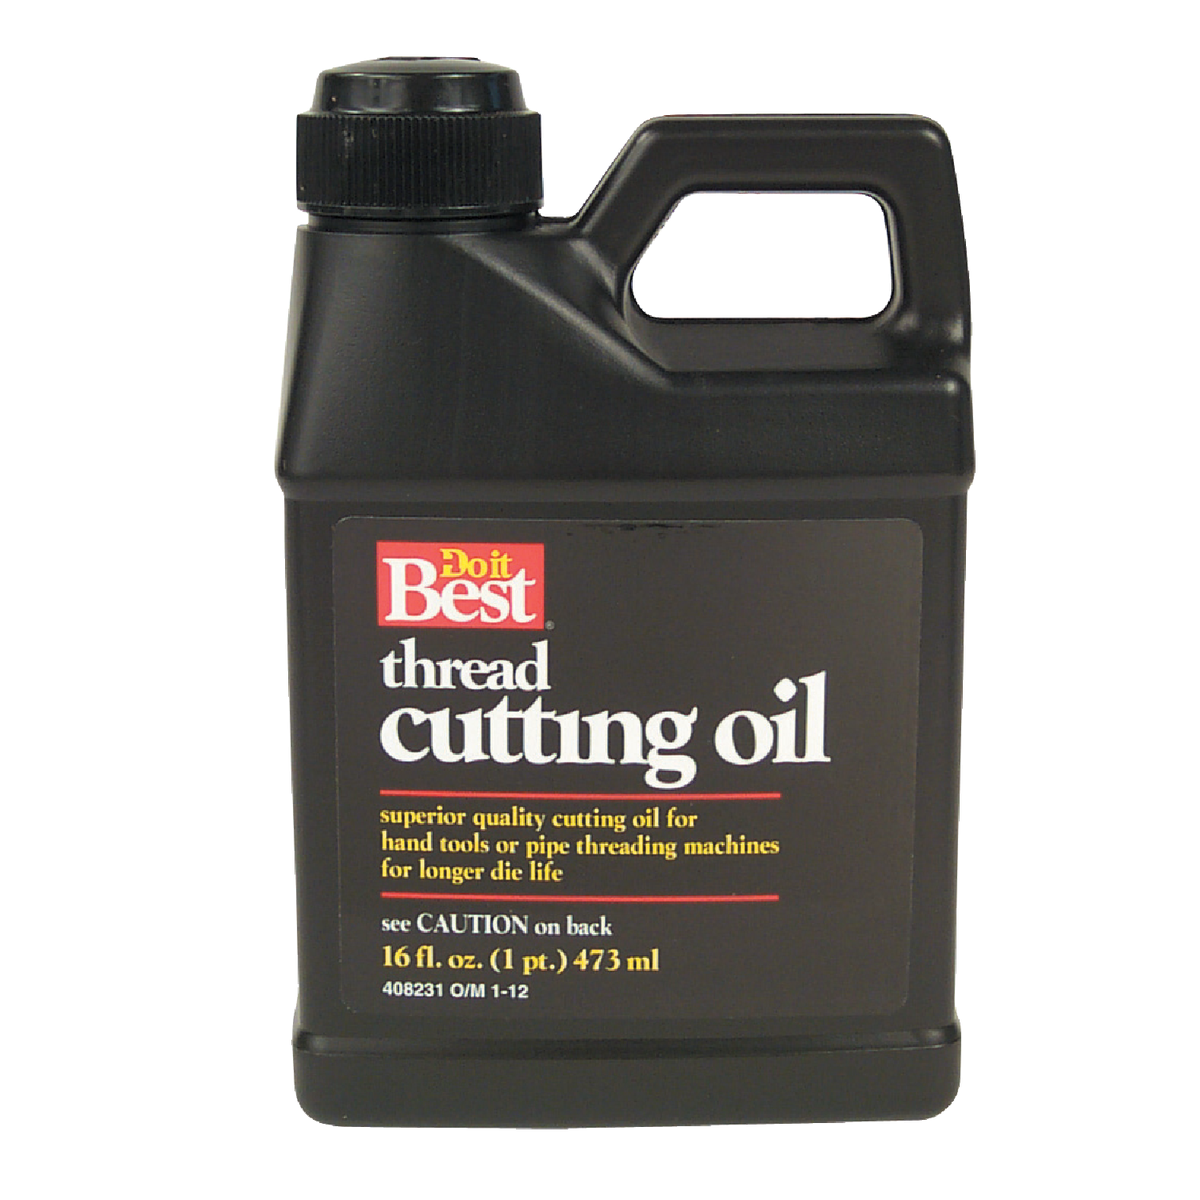 Cutting Oil